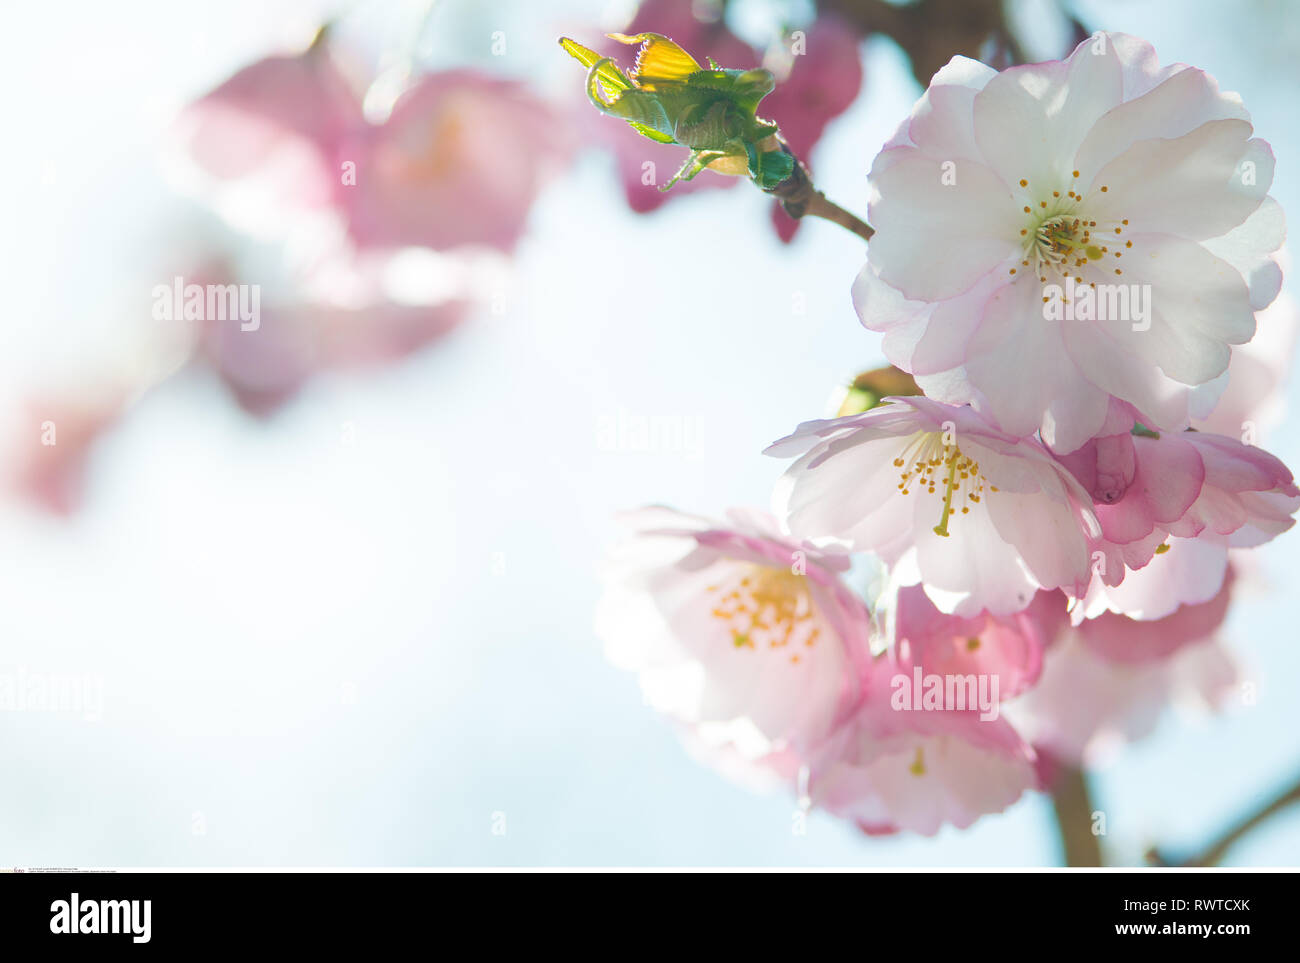 La botanica, ciliegia giapponese 'Riconoscimento', attenzione! Per Greetingcard-Use / Postcard-Use nei Paesi di lingua tedesca talune restrizioni possono applicare Foto Stock